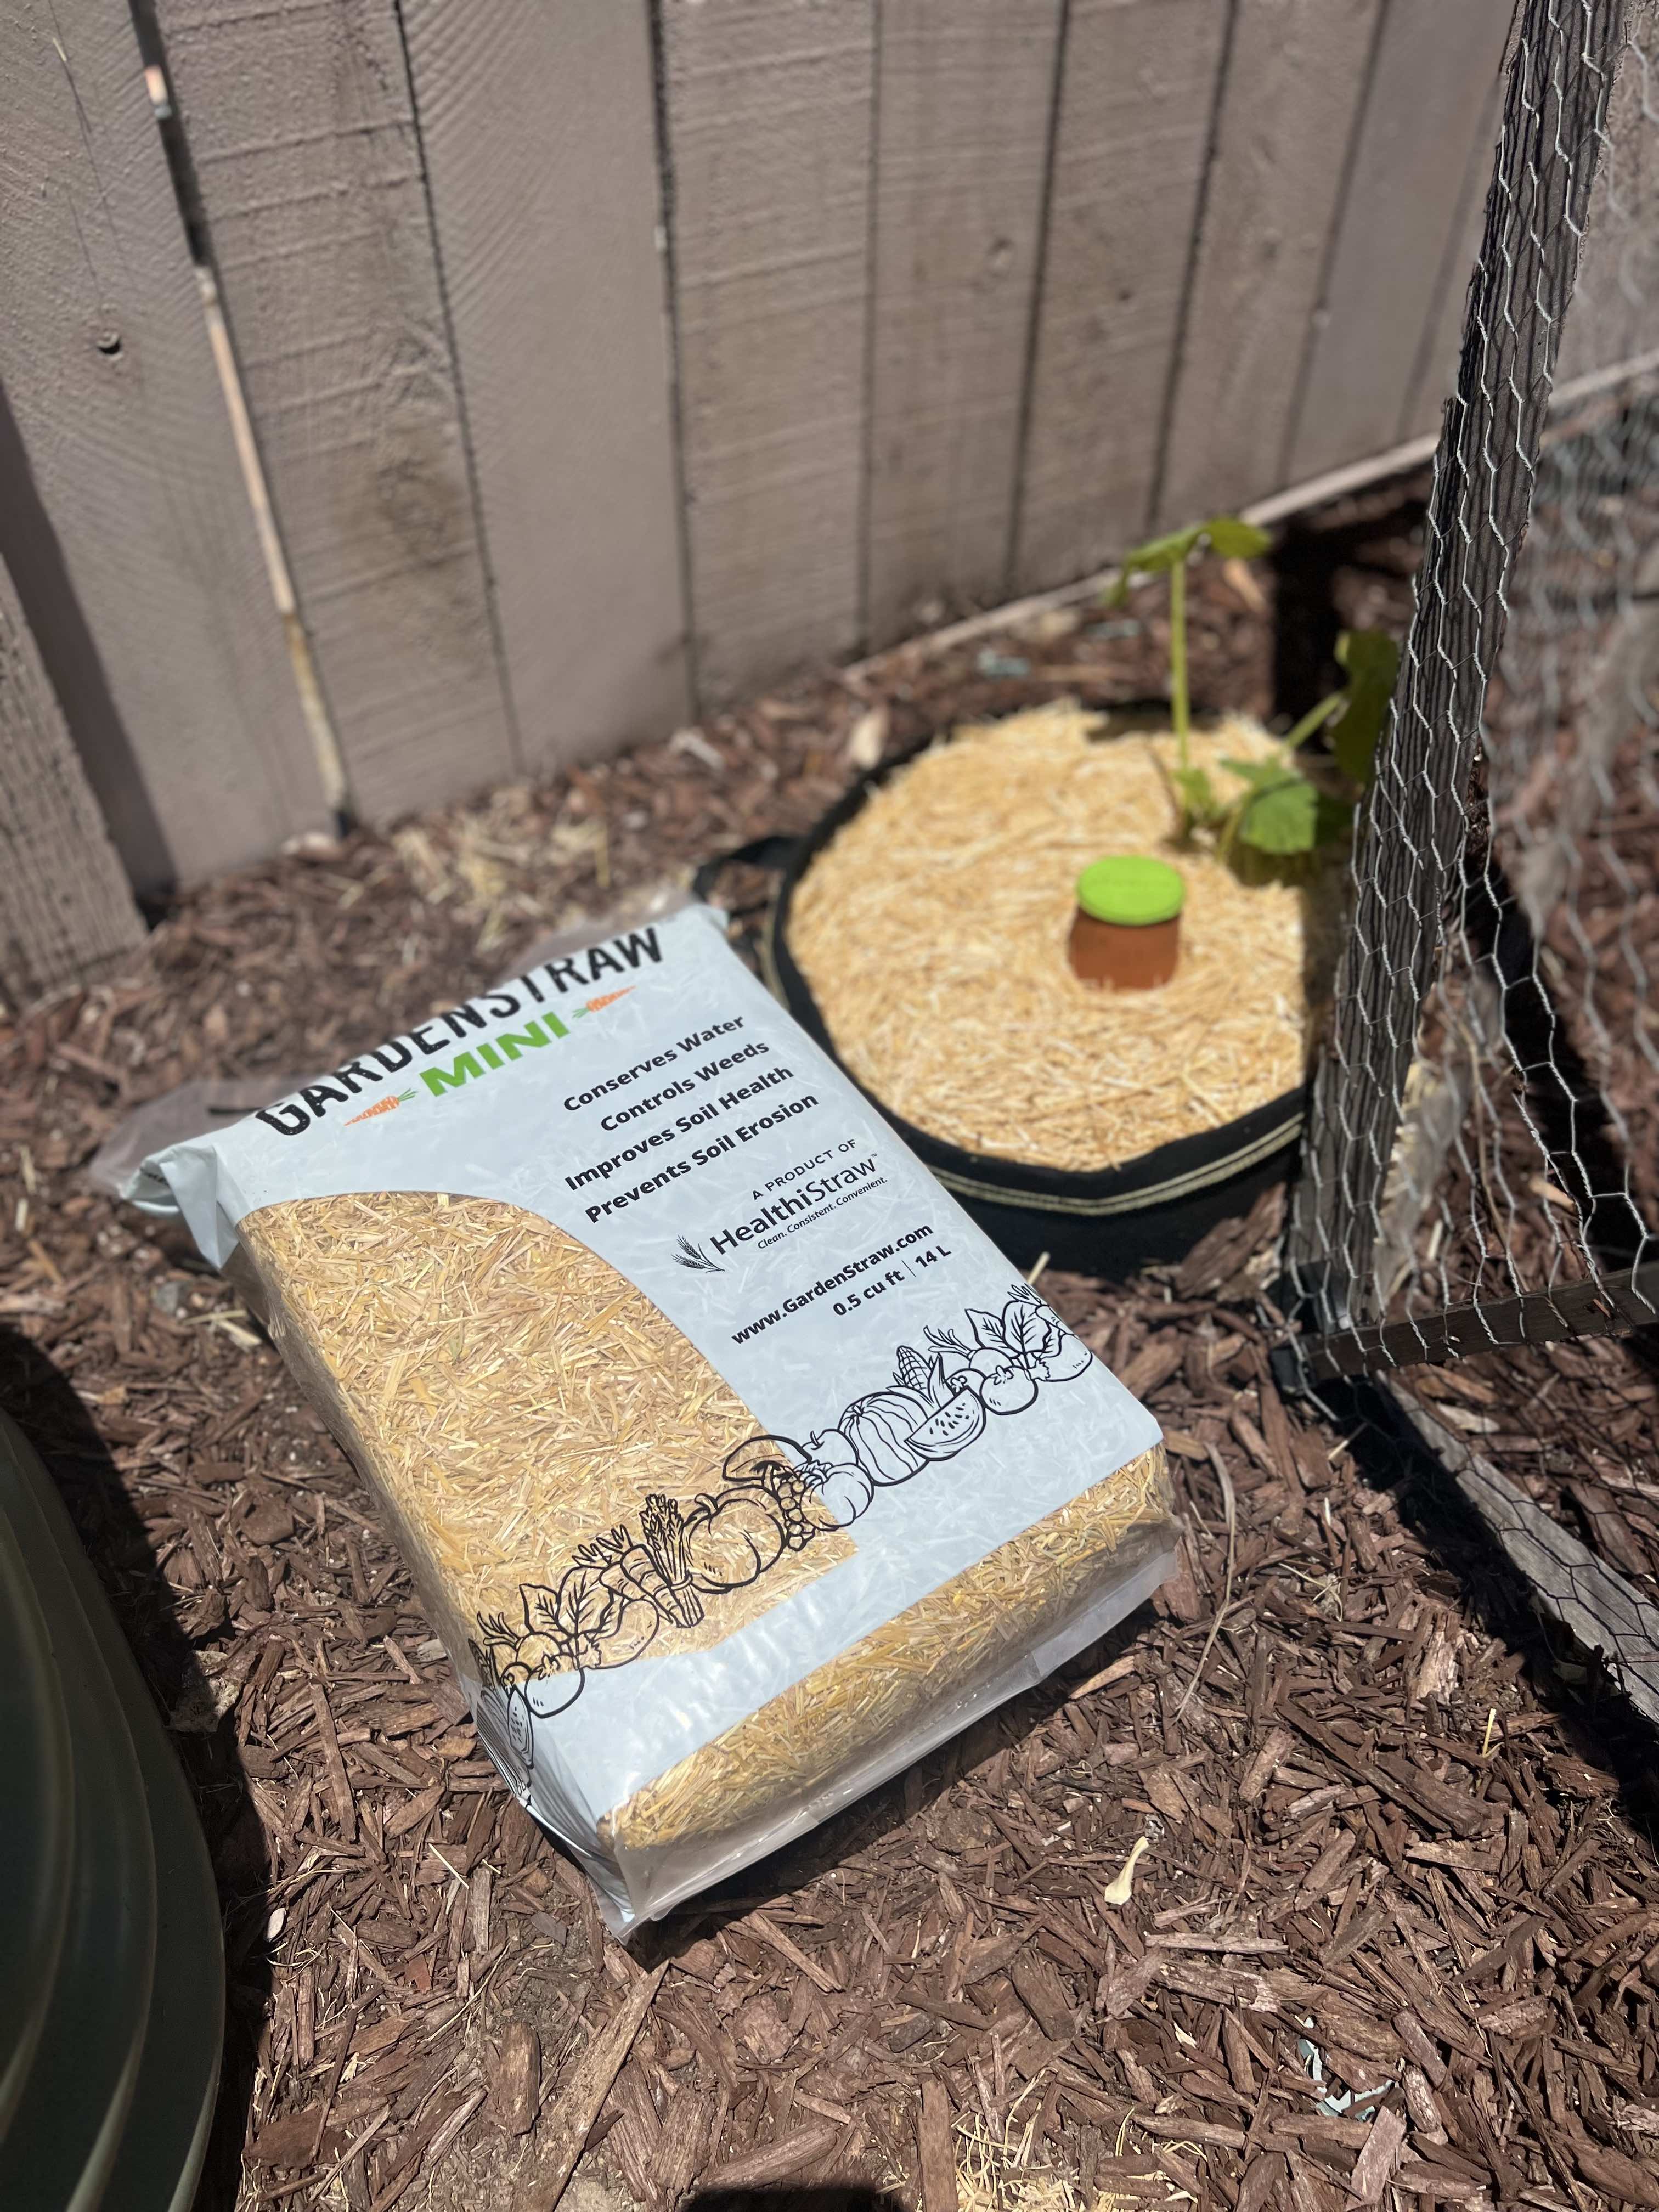 Premium Straw Mulch - Soil Regulation